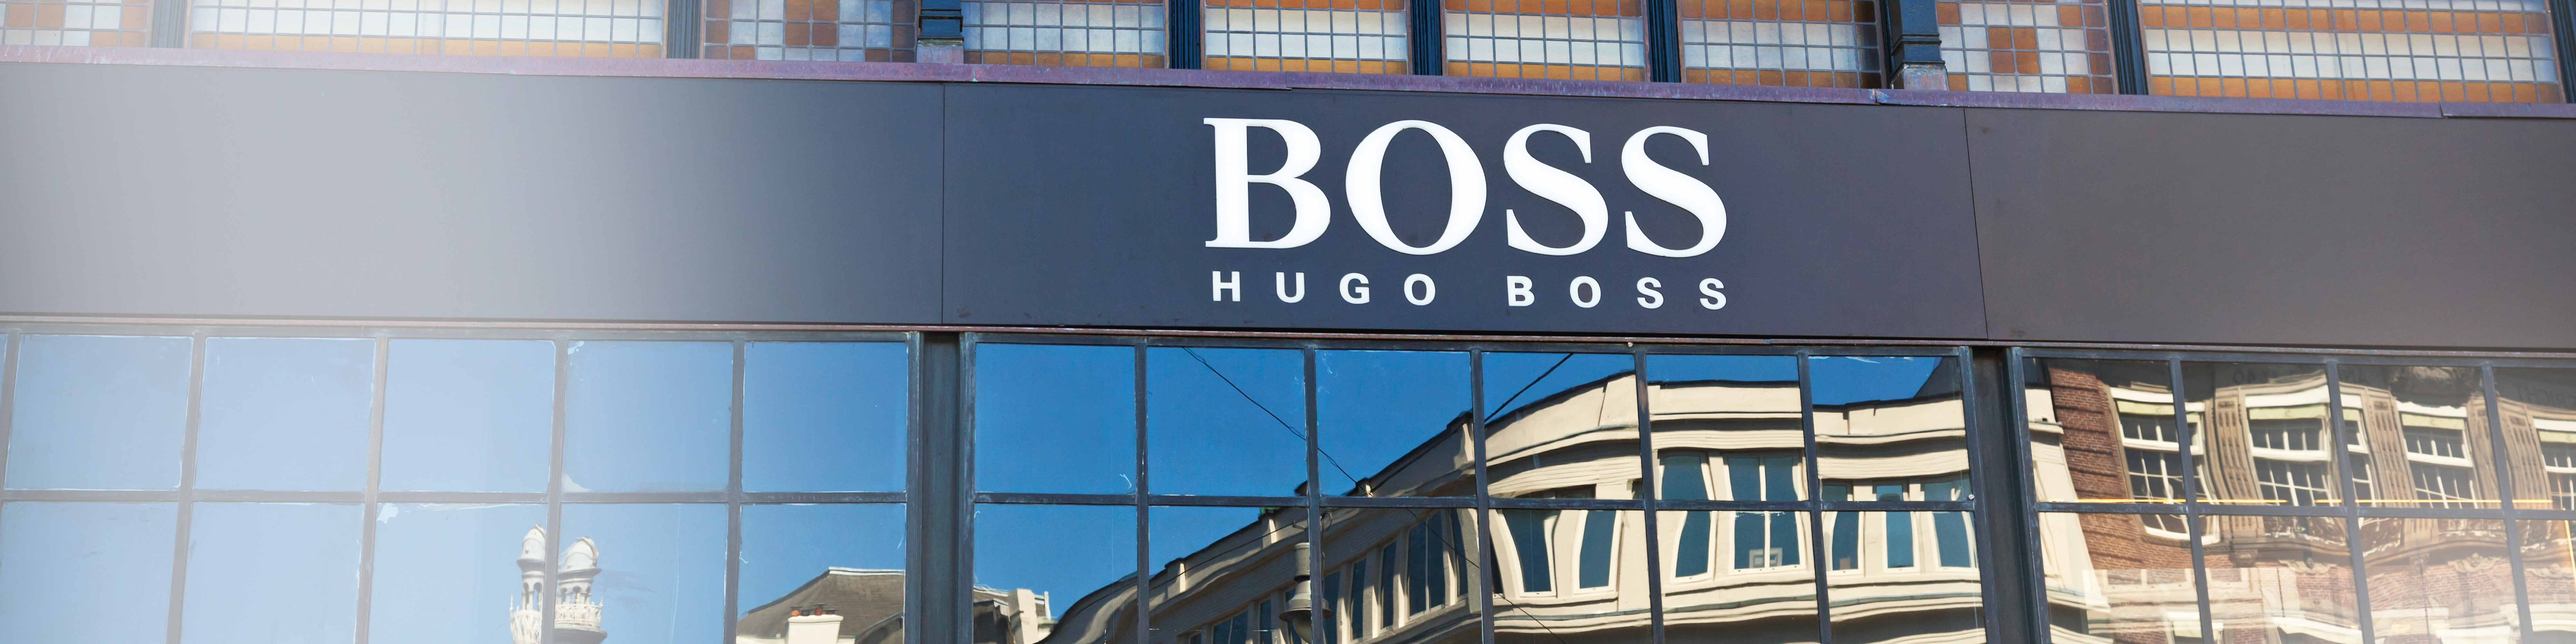 hugo boss luxury